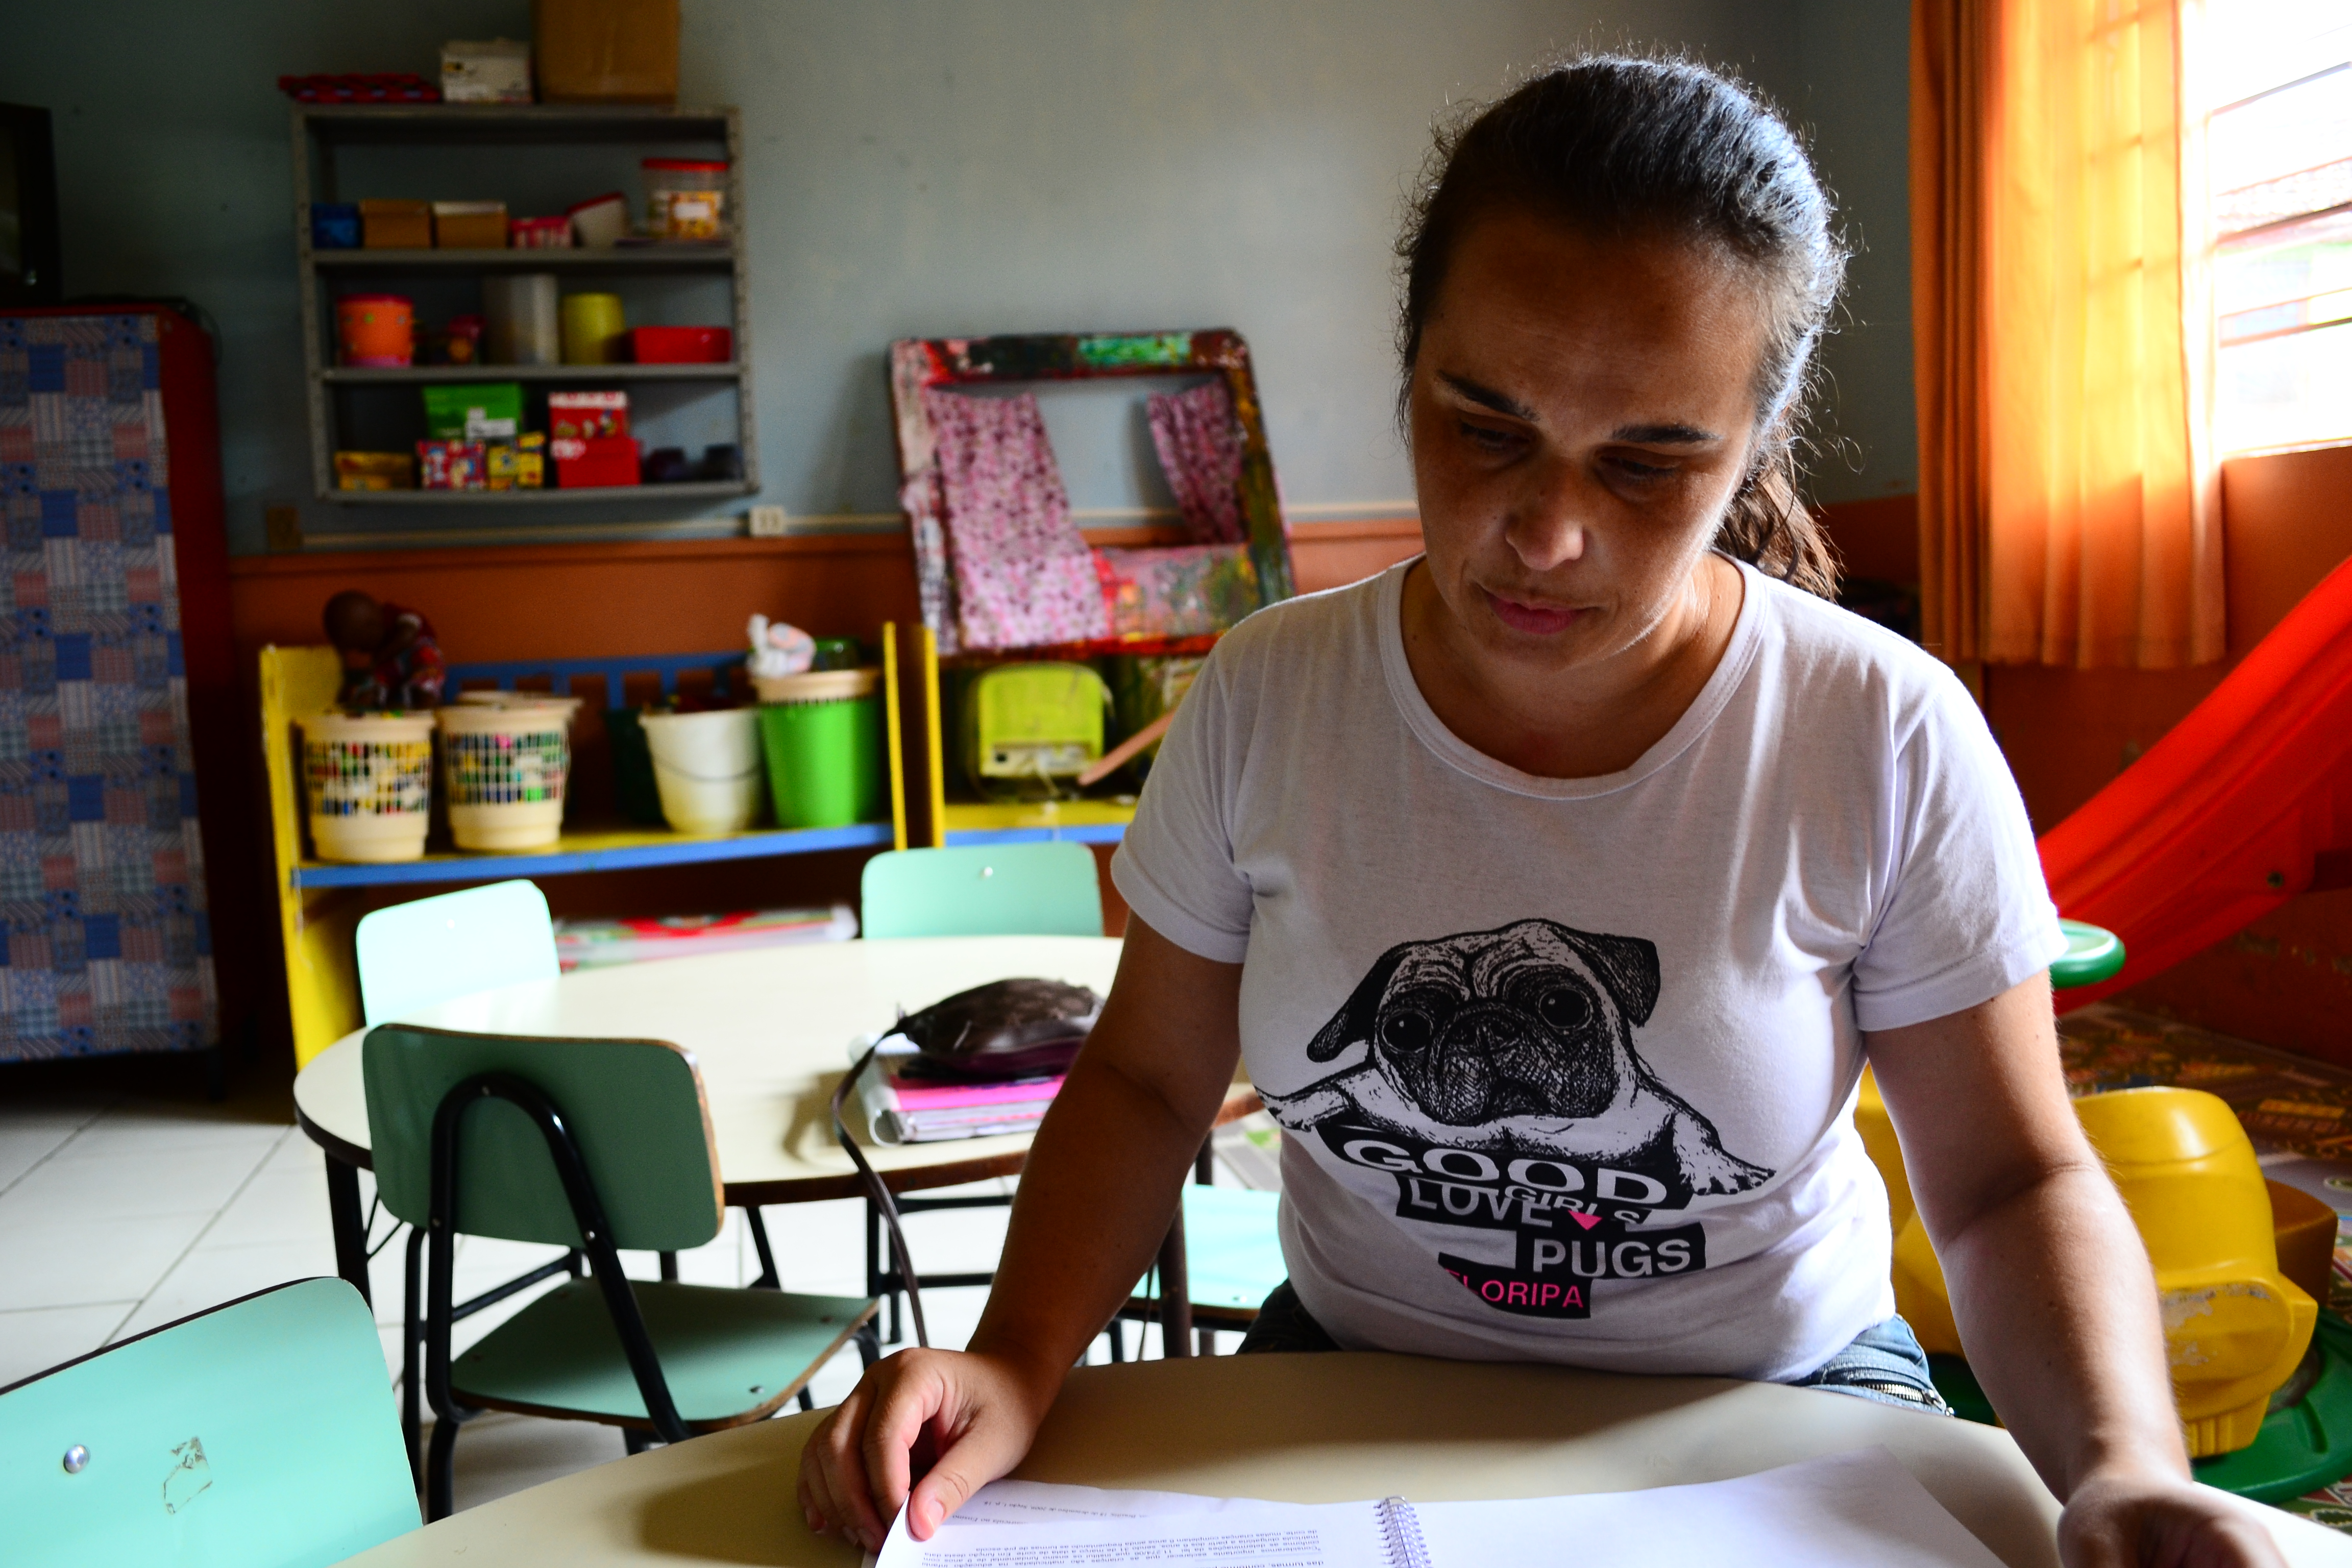 Entrevista | “Tem muita criança que fica sem vaga”, diz Juliana Moreira